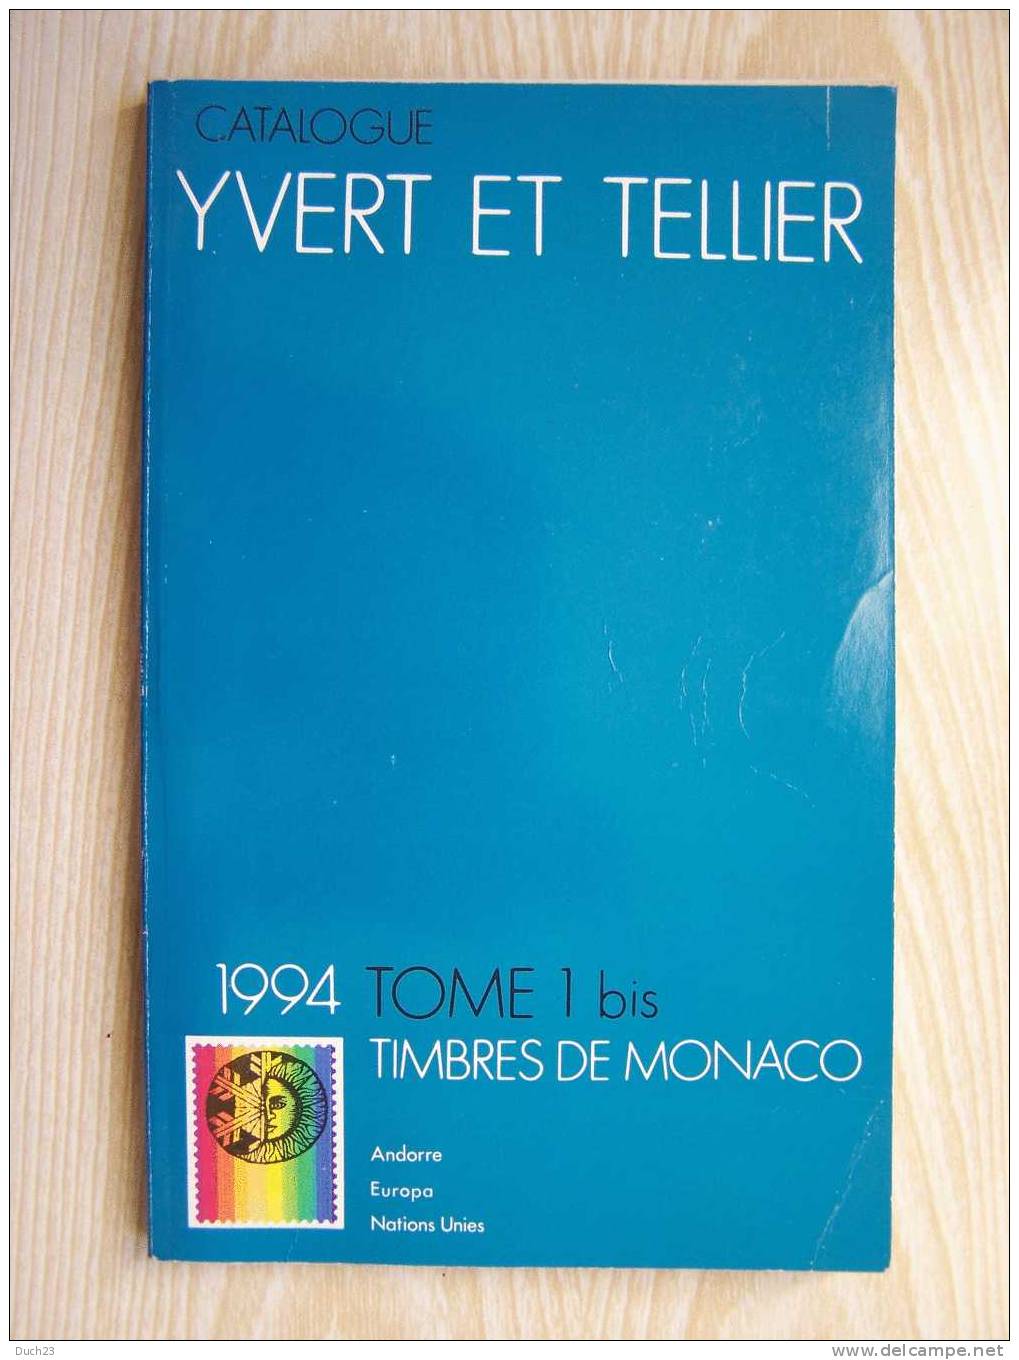 CATALOGUE DE COTATION YVERT ET TELLIER ANNEE 1994 TOME 1 BIS  TRES BON ETAT   REF CD - Frankrijk